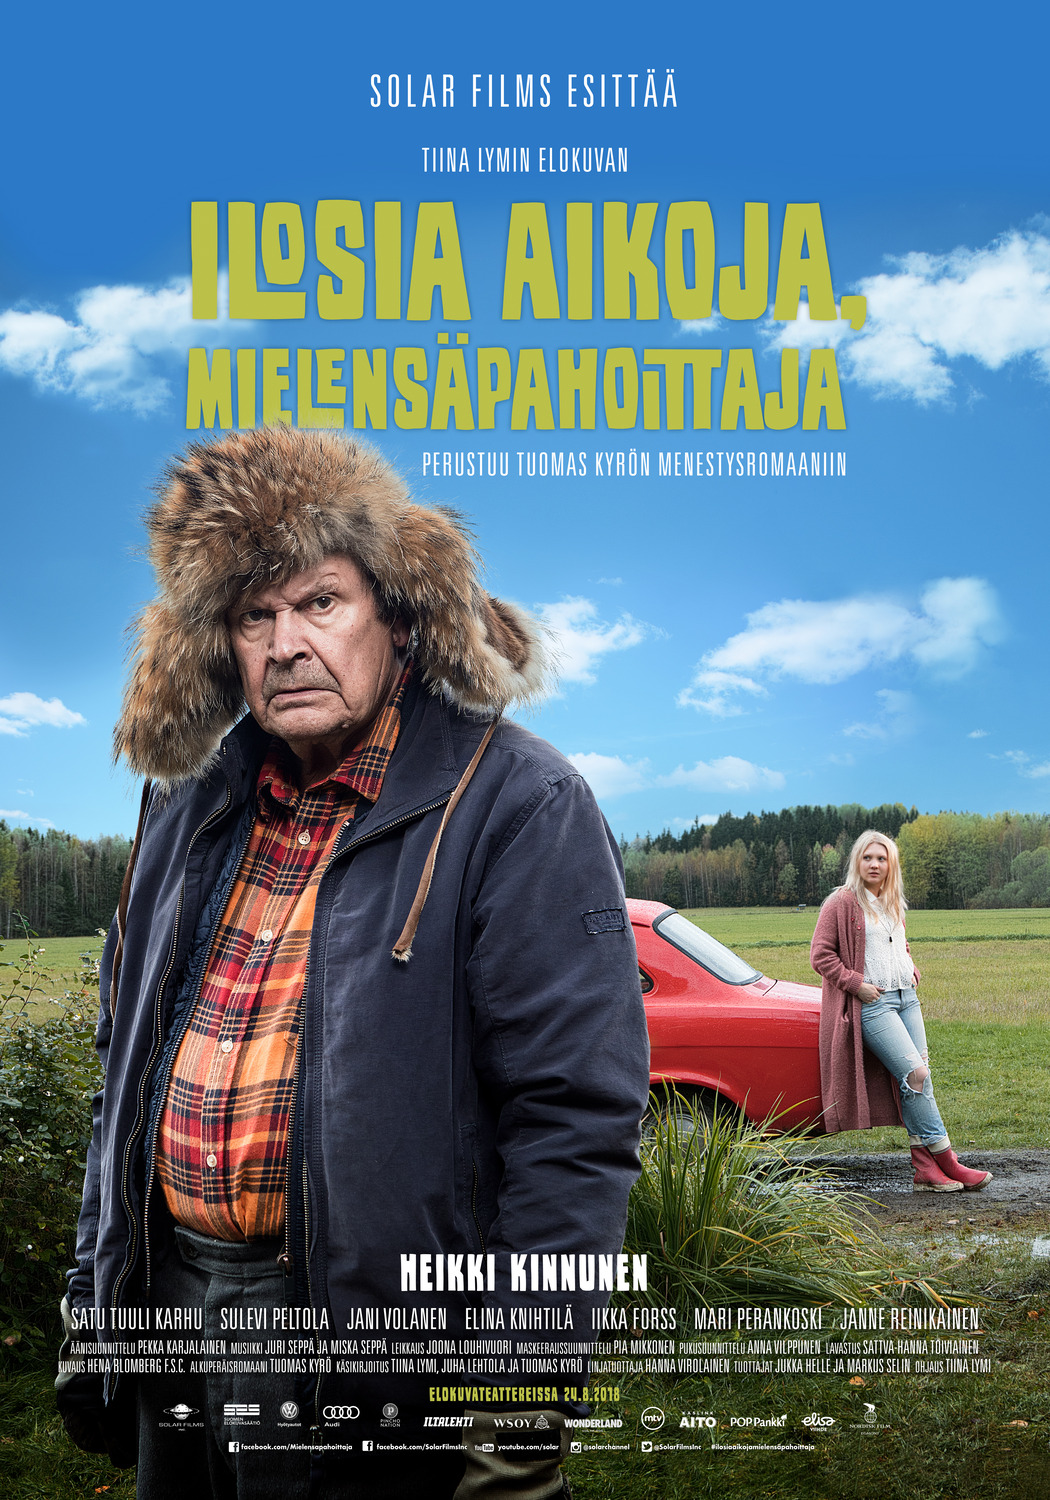 Extra Large Movie Poster Image for Ilosia aikoja, Mielensäpahoittaja (#2 of 2)